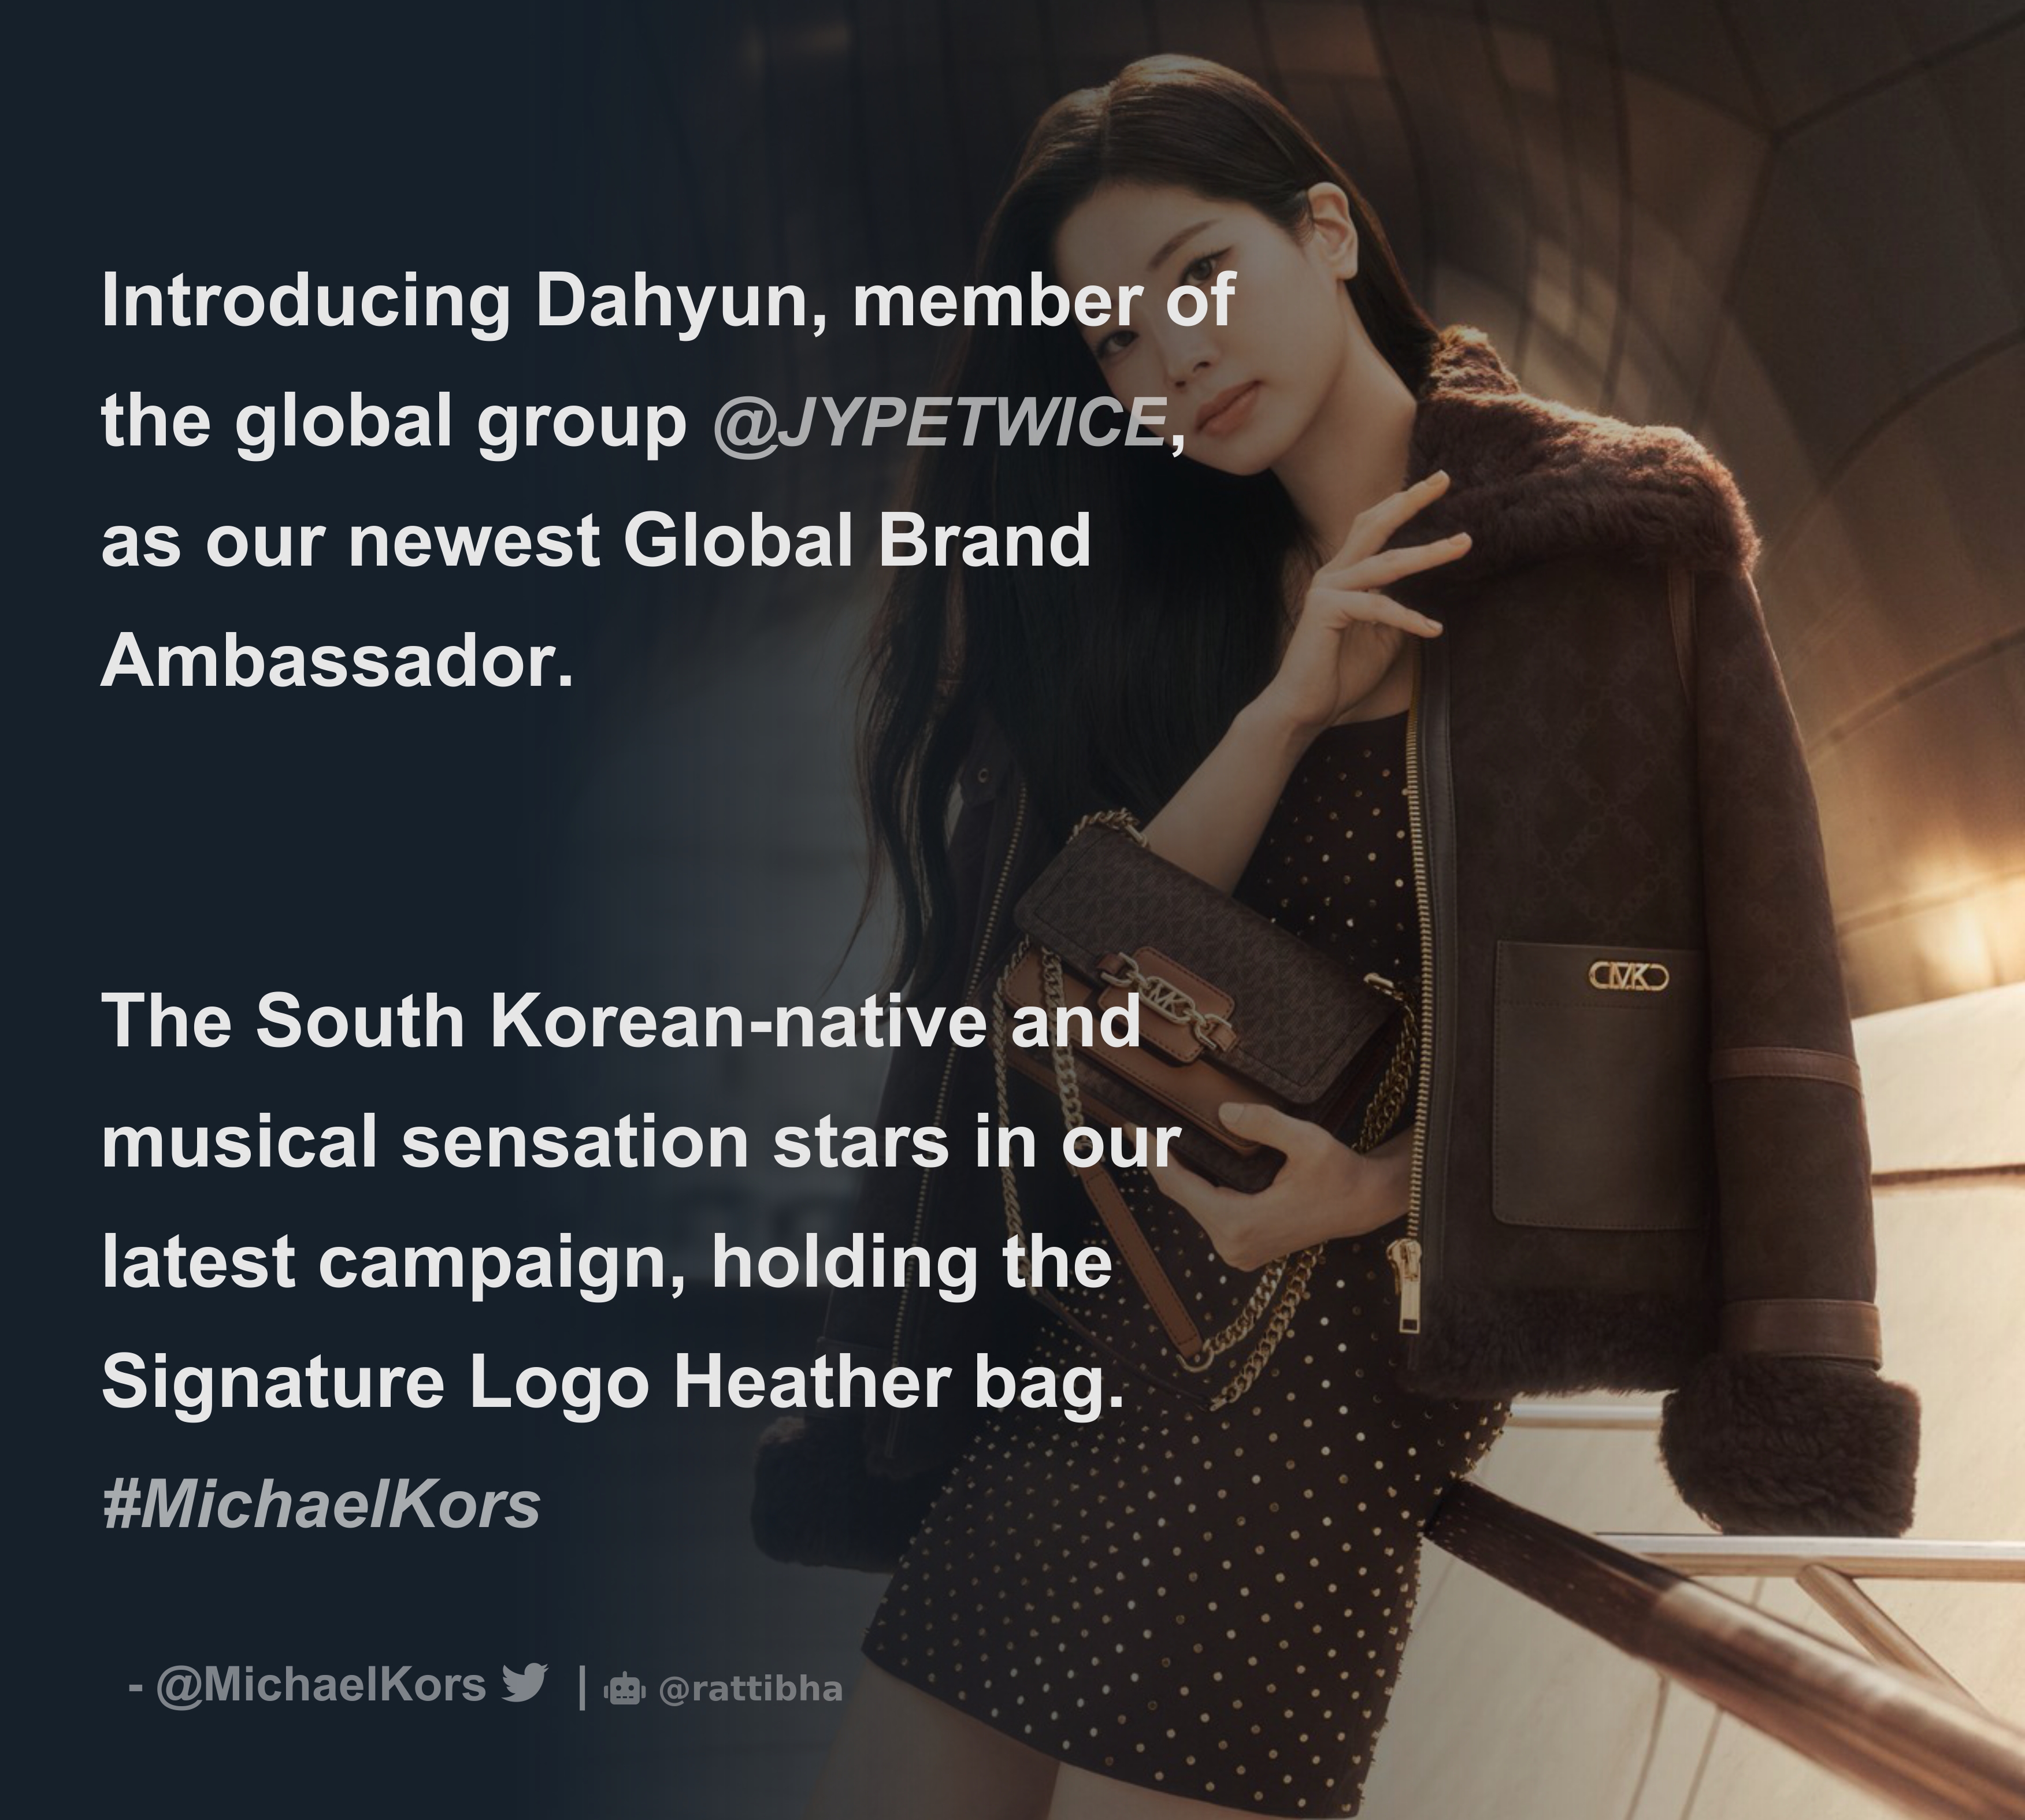 Michael Kors on X: Introducing Dahyun, member of the global group